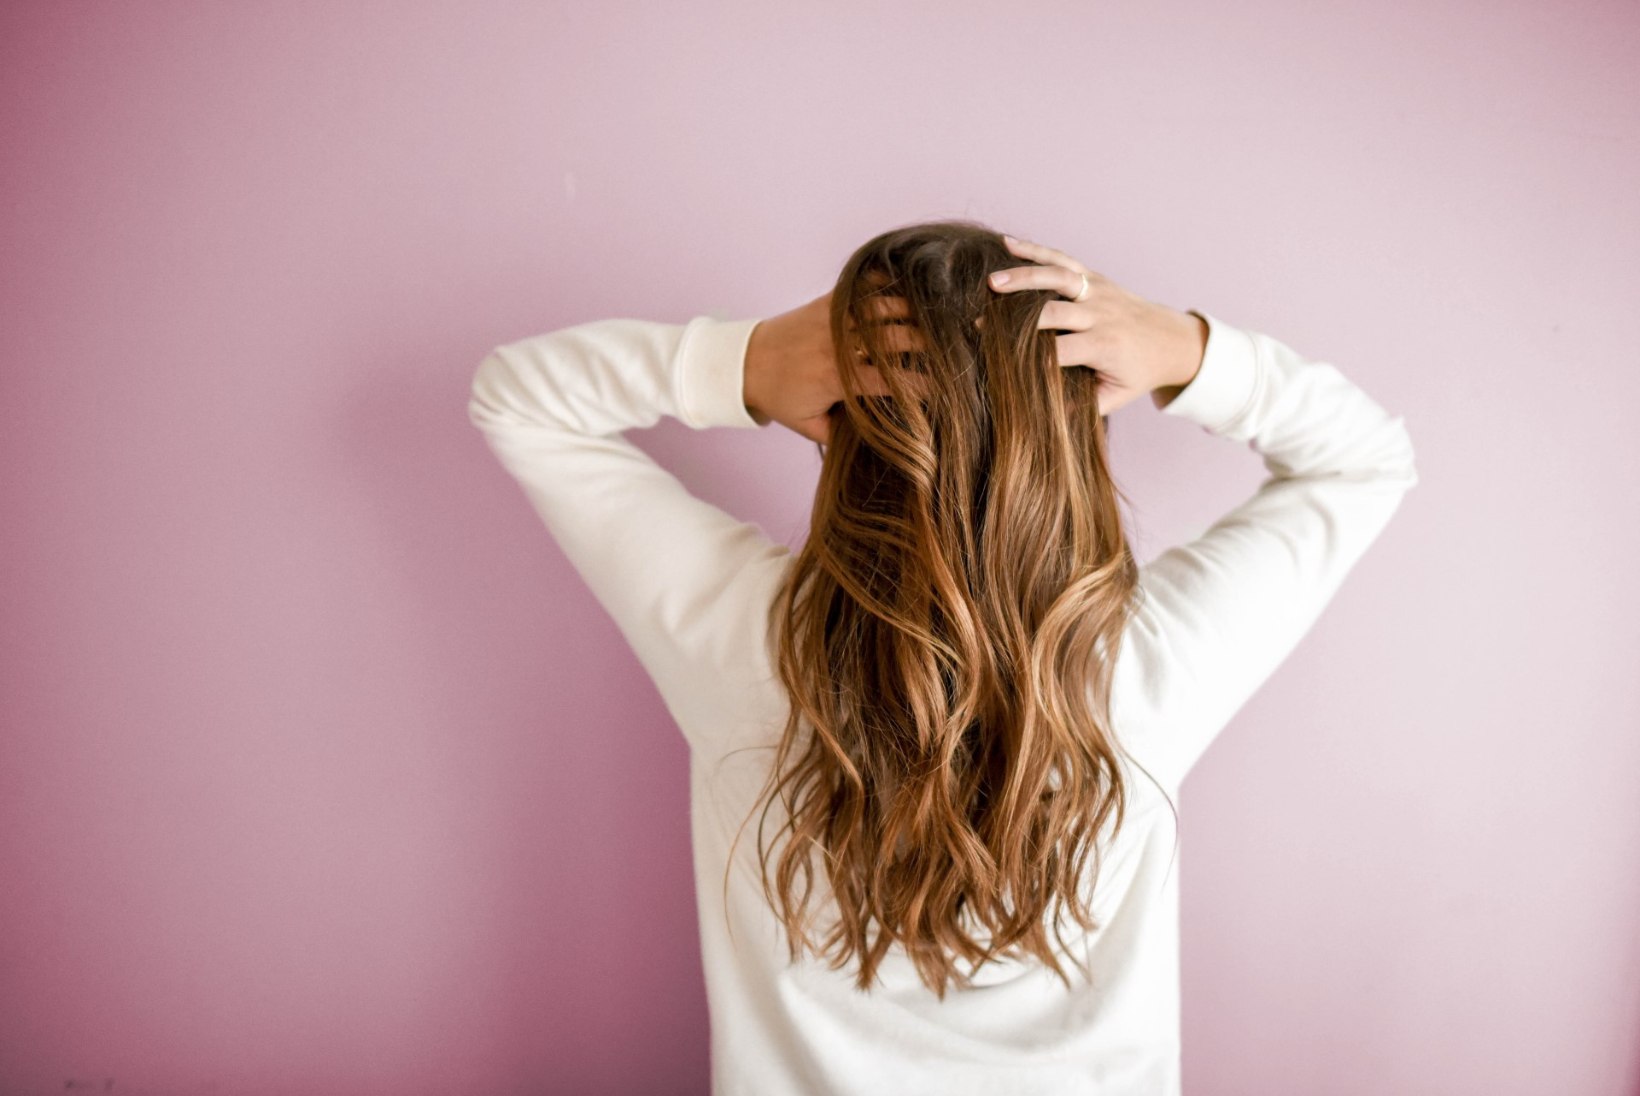 Kaunite kiharate saladus: maskid, mis panevad sinu juuksed kasvama